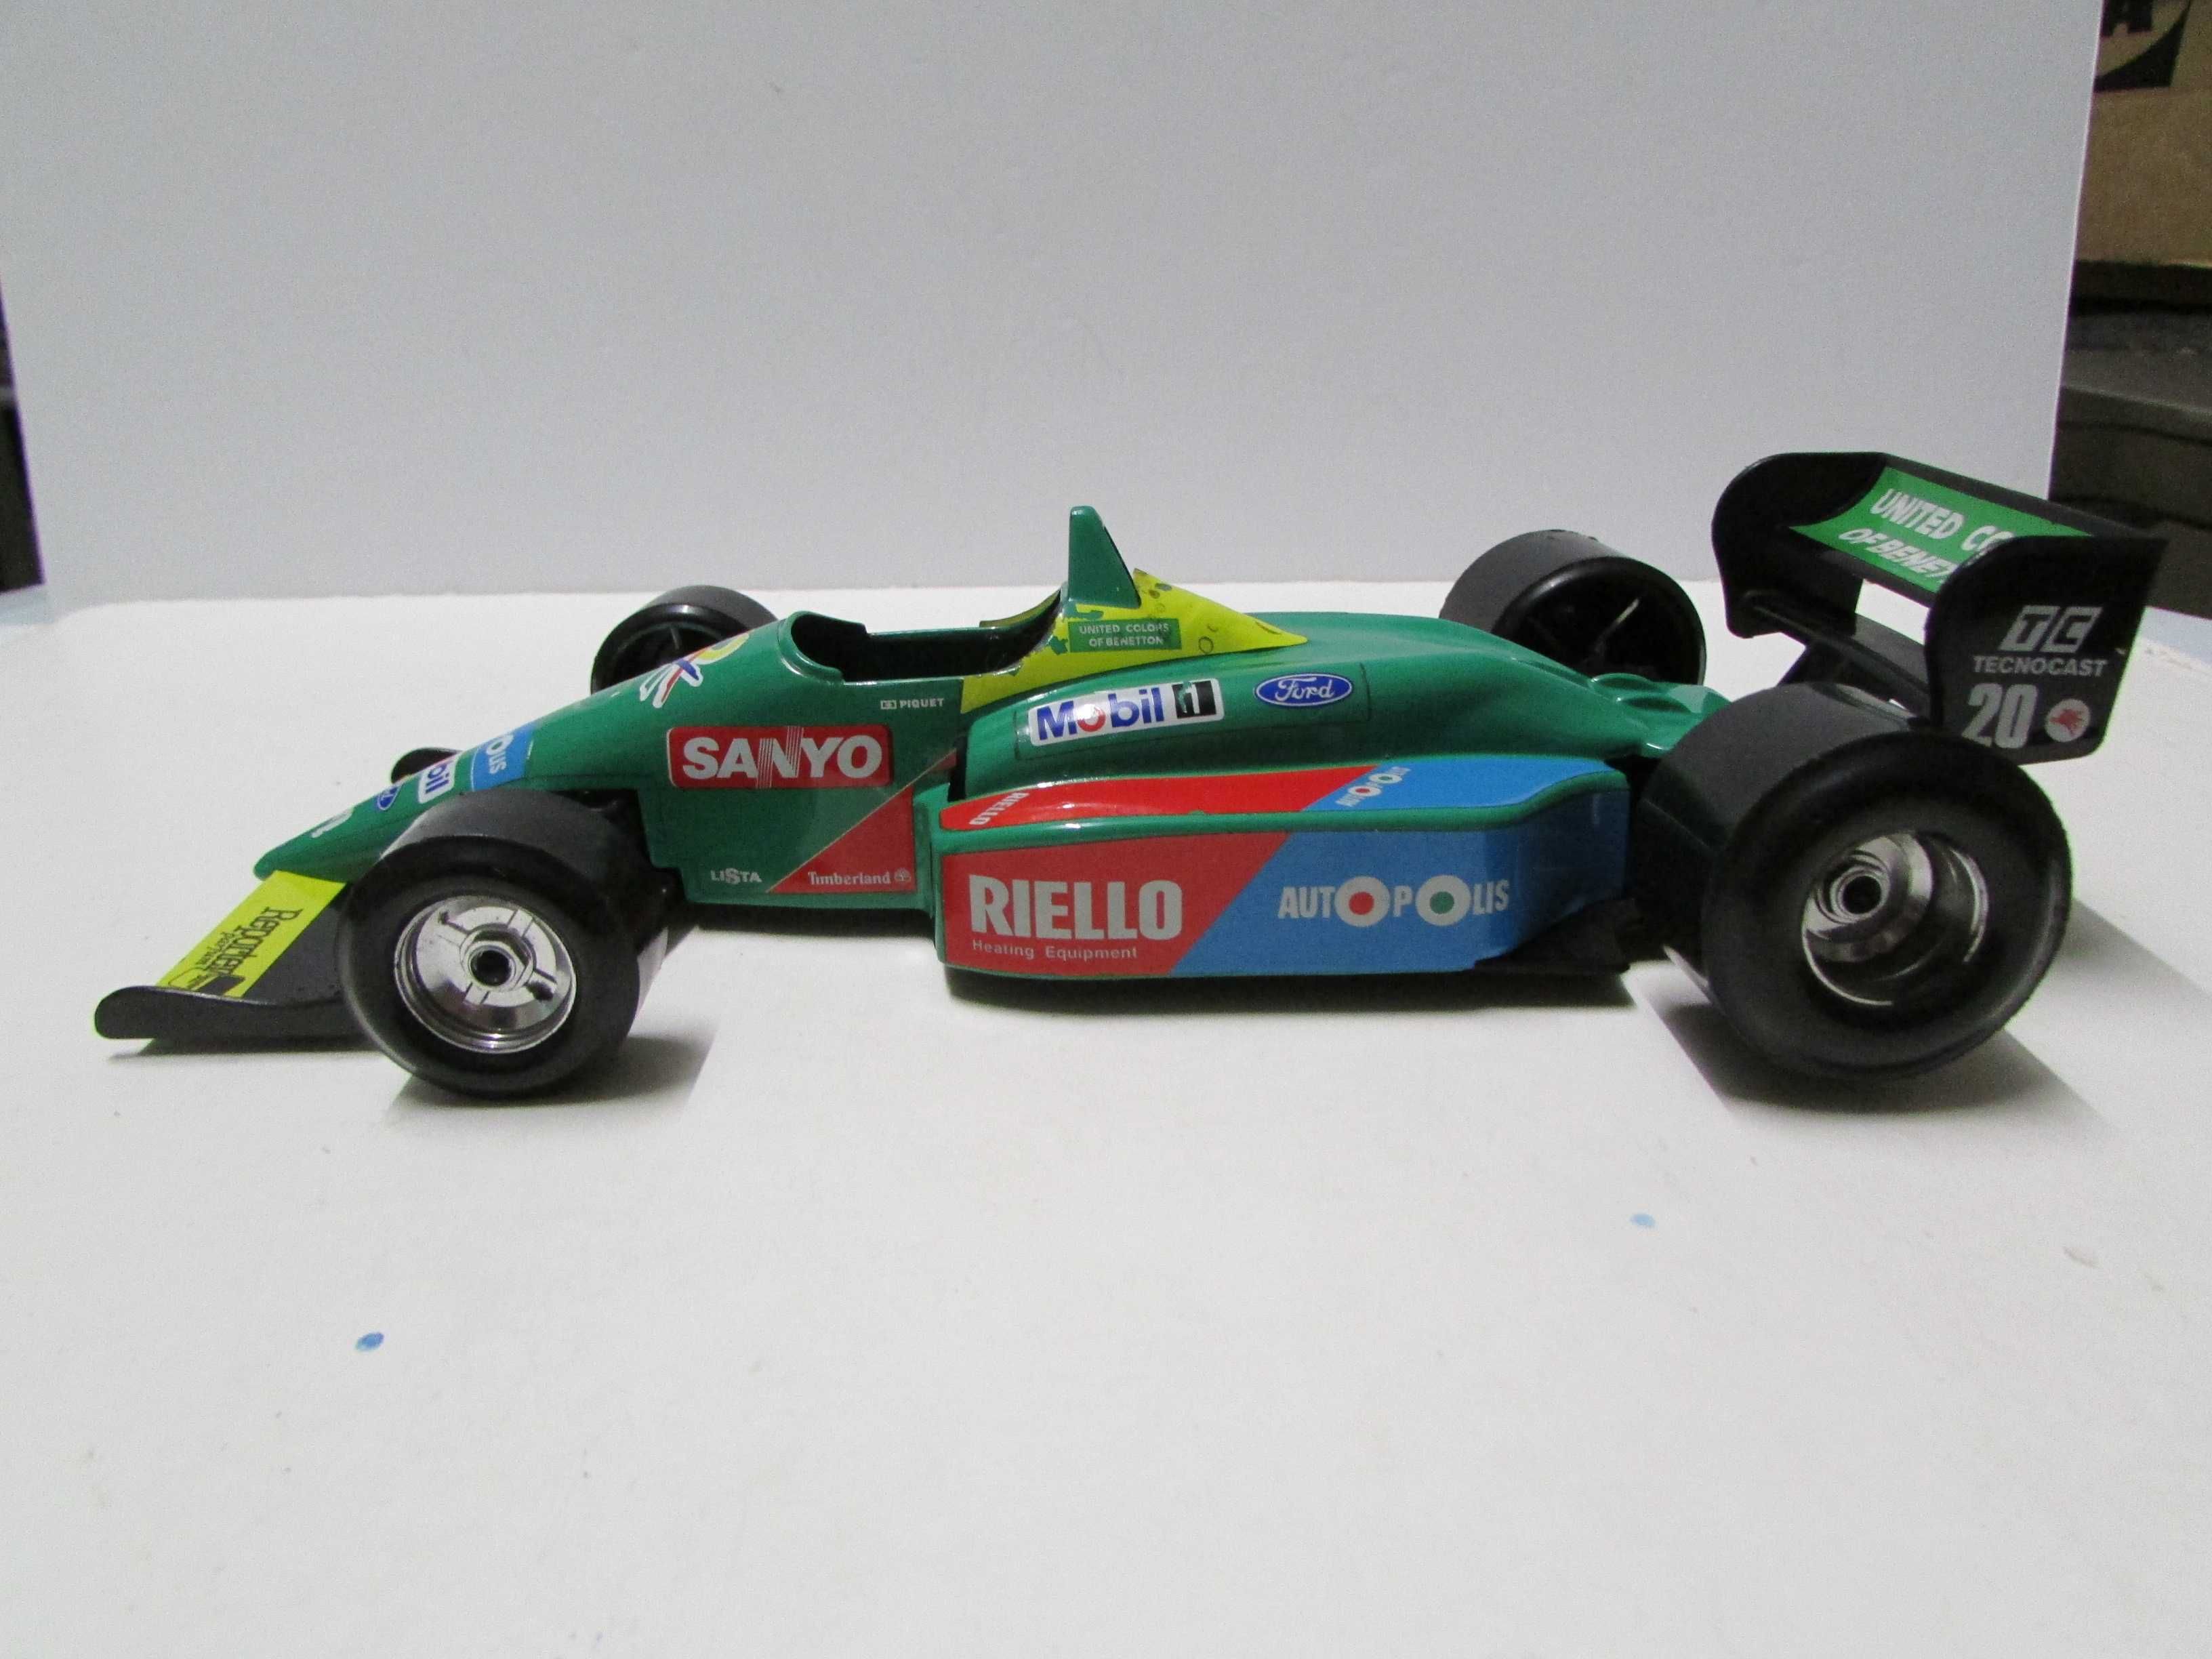 Fórmula 1: Benetton Ford #20 Piquet - Bburago esc 1/24